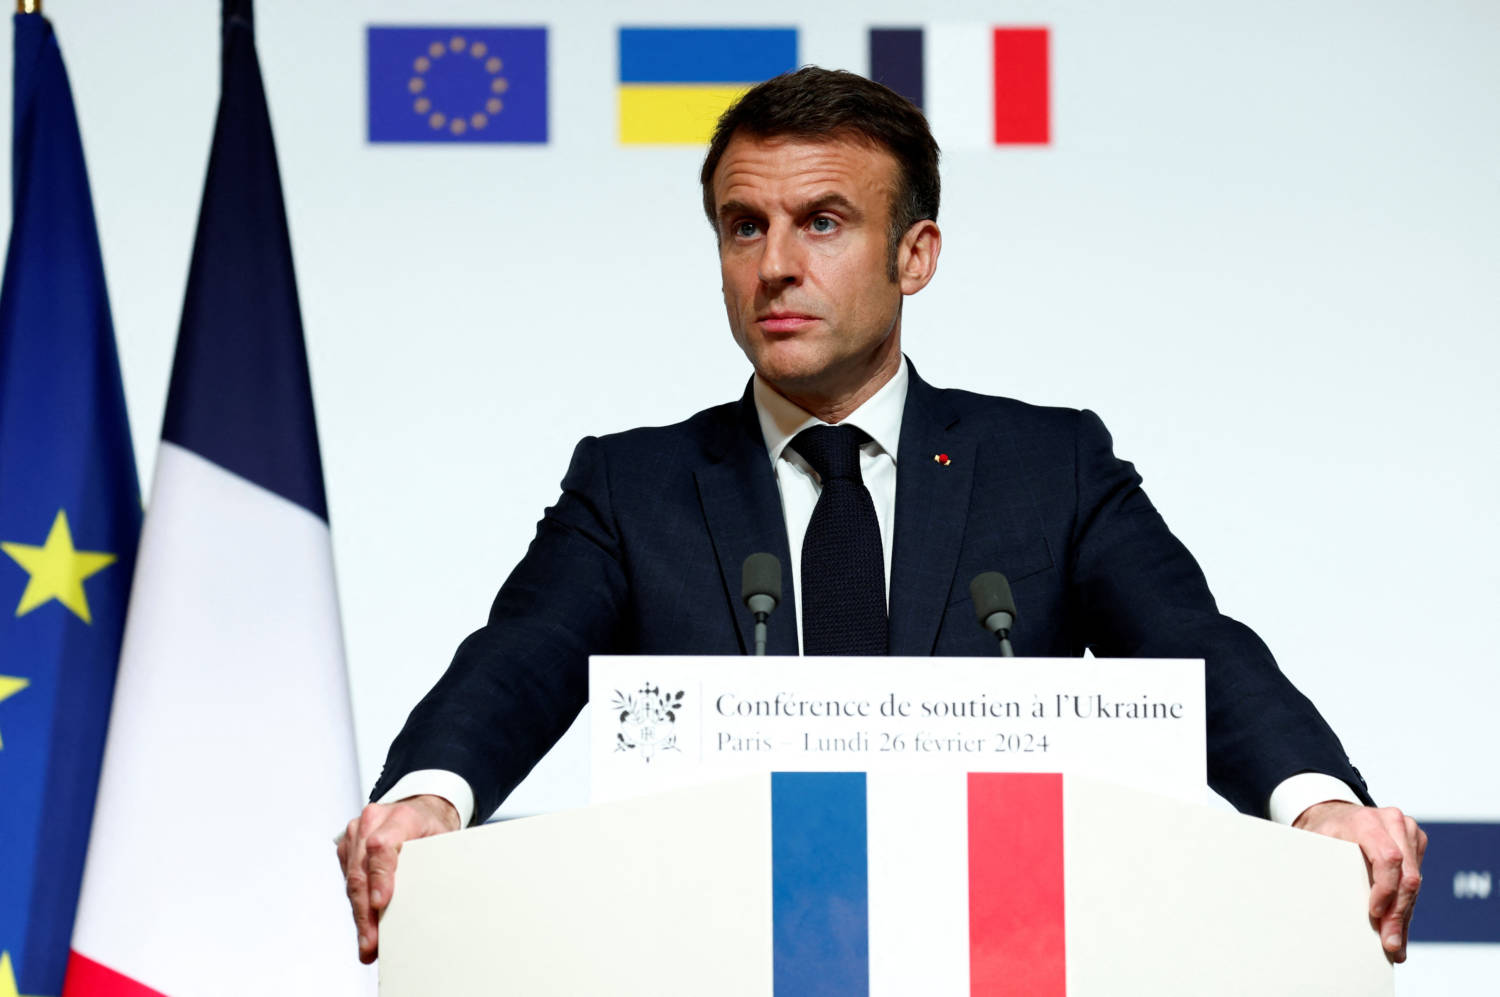 French President Macron Hosts Ukraine Summit In Paris